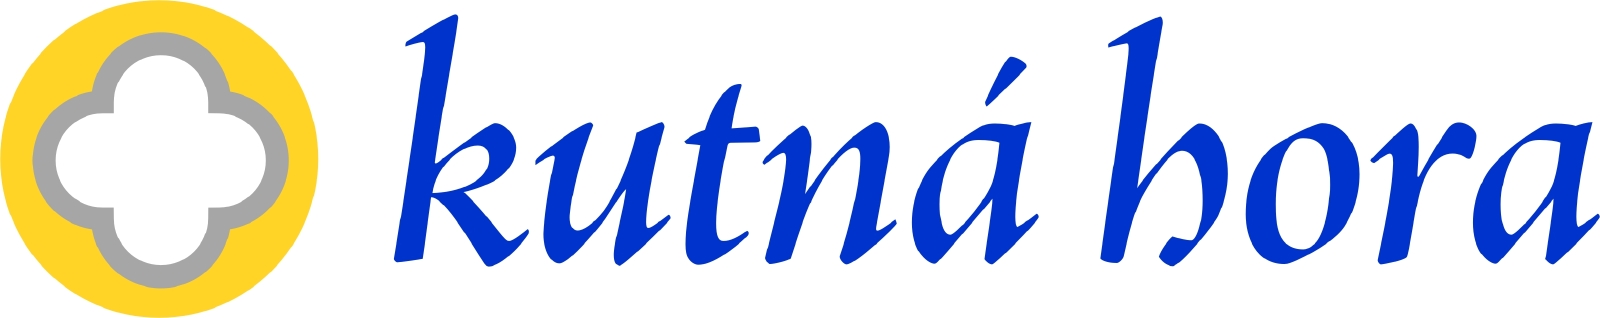 kutna-hora-logo-color-var1.jpg